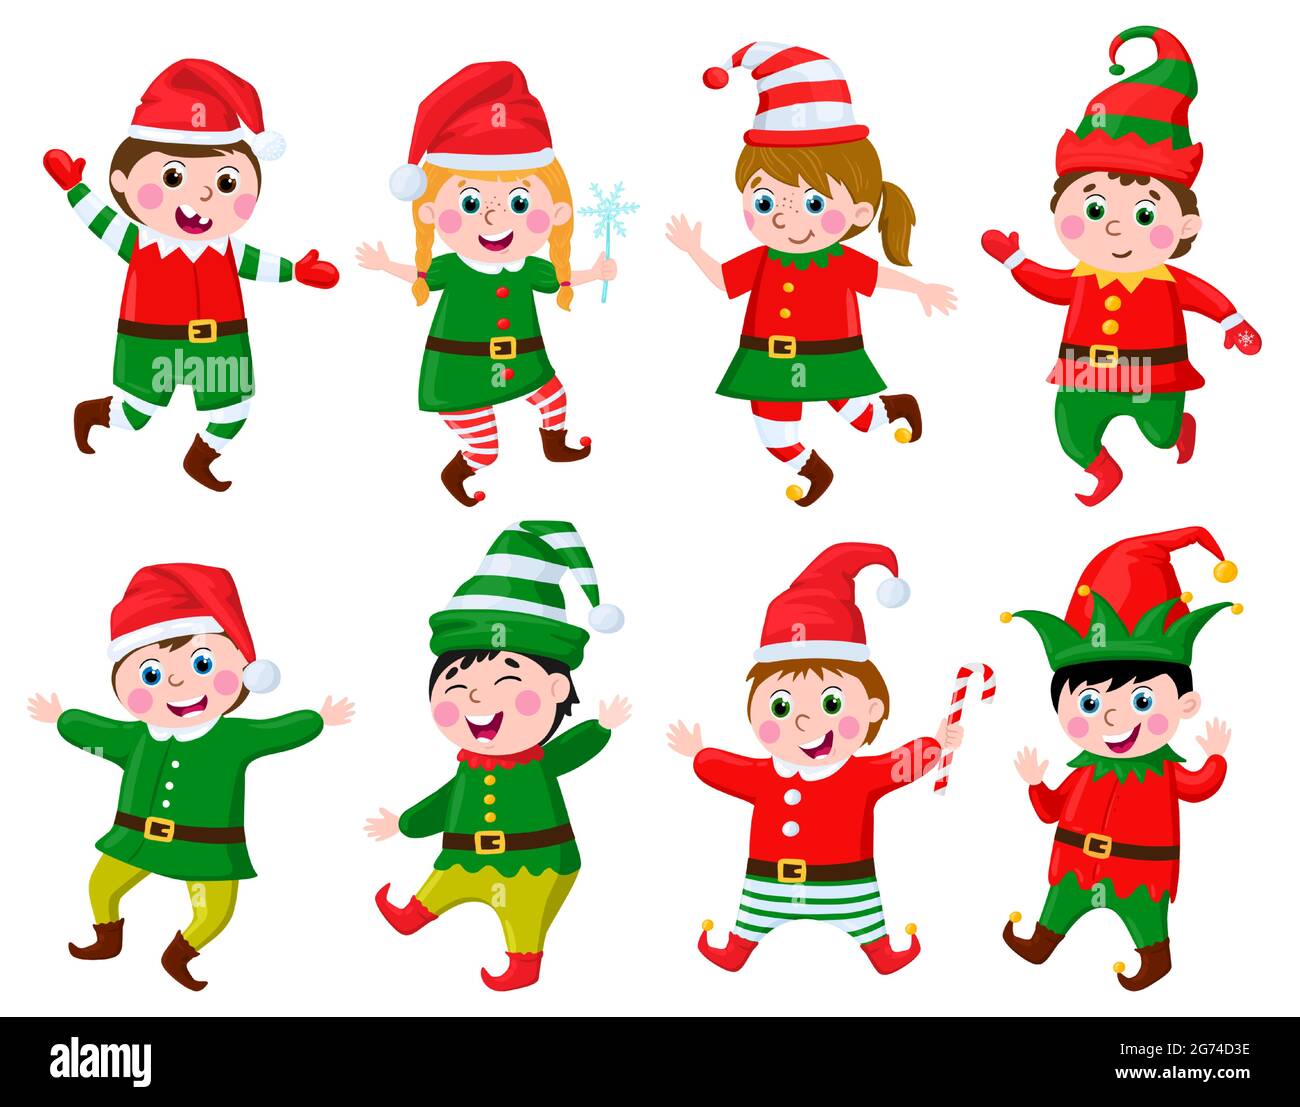 Enfants en costume d'orf. Enfants drôles portant le père Noël Helpers elves costumes de carnaval ensemble d'illustrations vectorielles. Personnages mignons de petits elfes Illustration de Vecteur